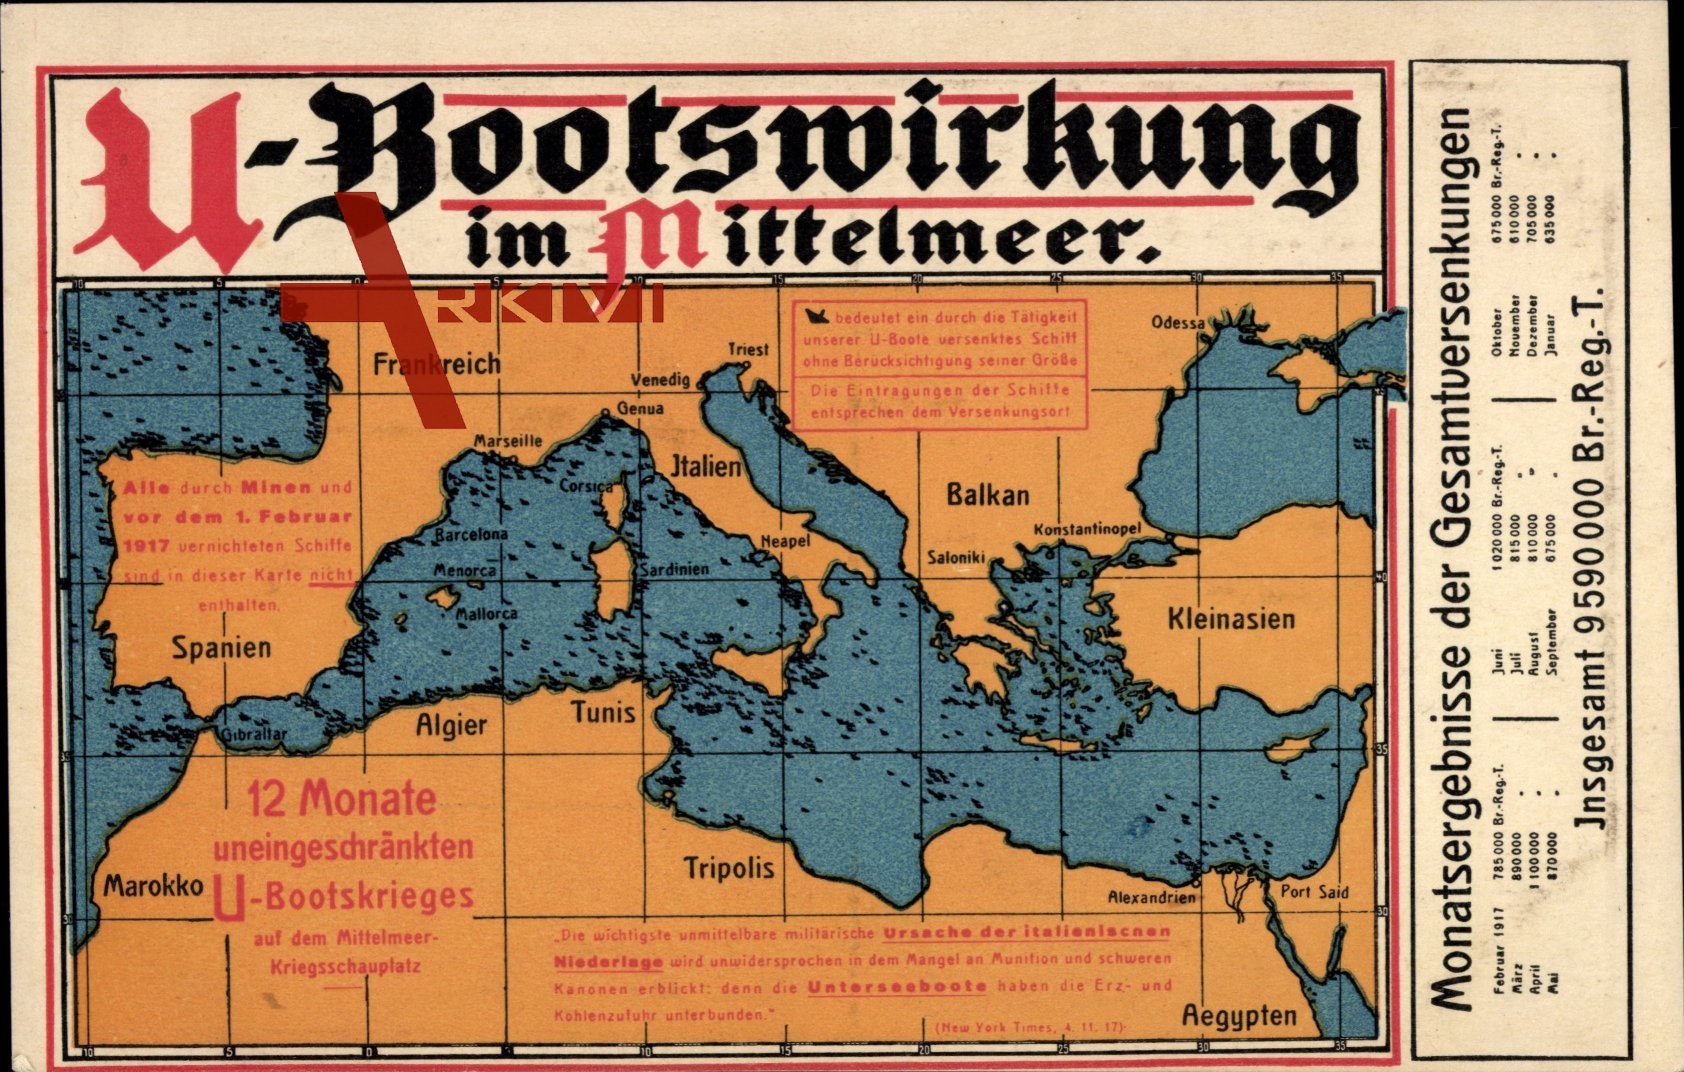 Landkarten U-Bootswirkung im Mittelmeer, Krieg, Frankreich, Tunis, Ägypten